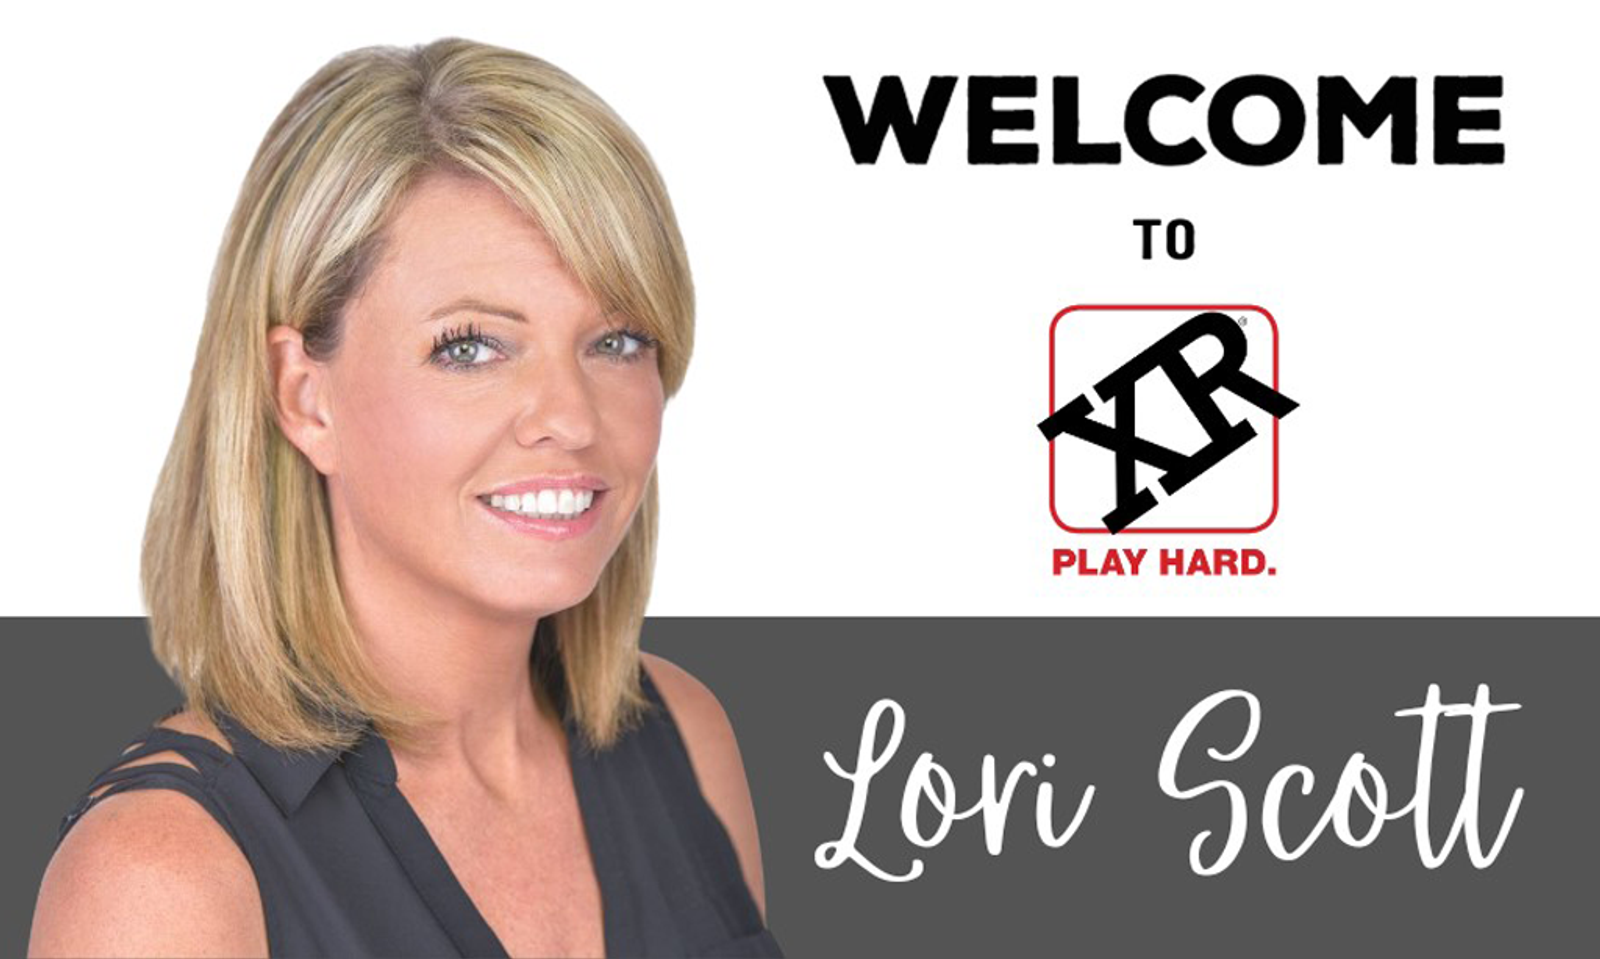 XR Brands Welcomes Lori Scott as Director of Business Development